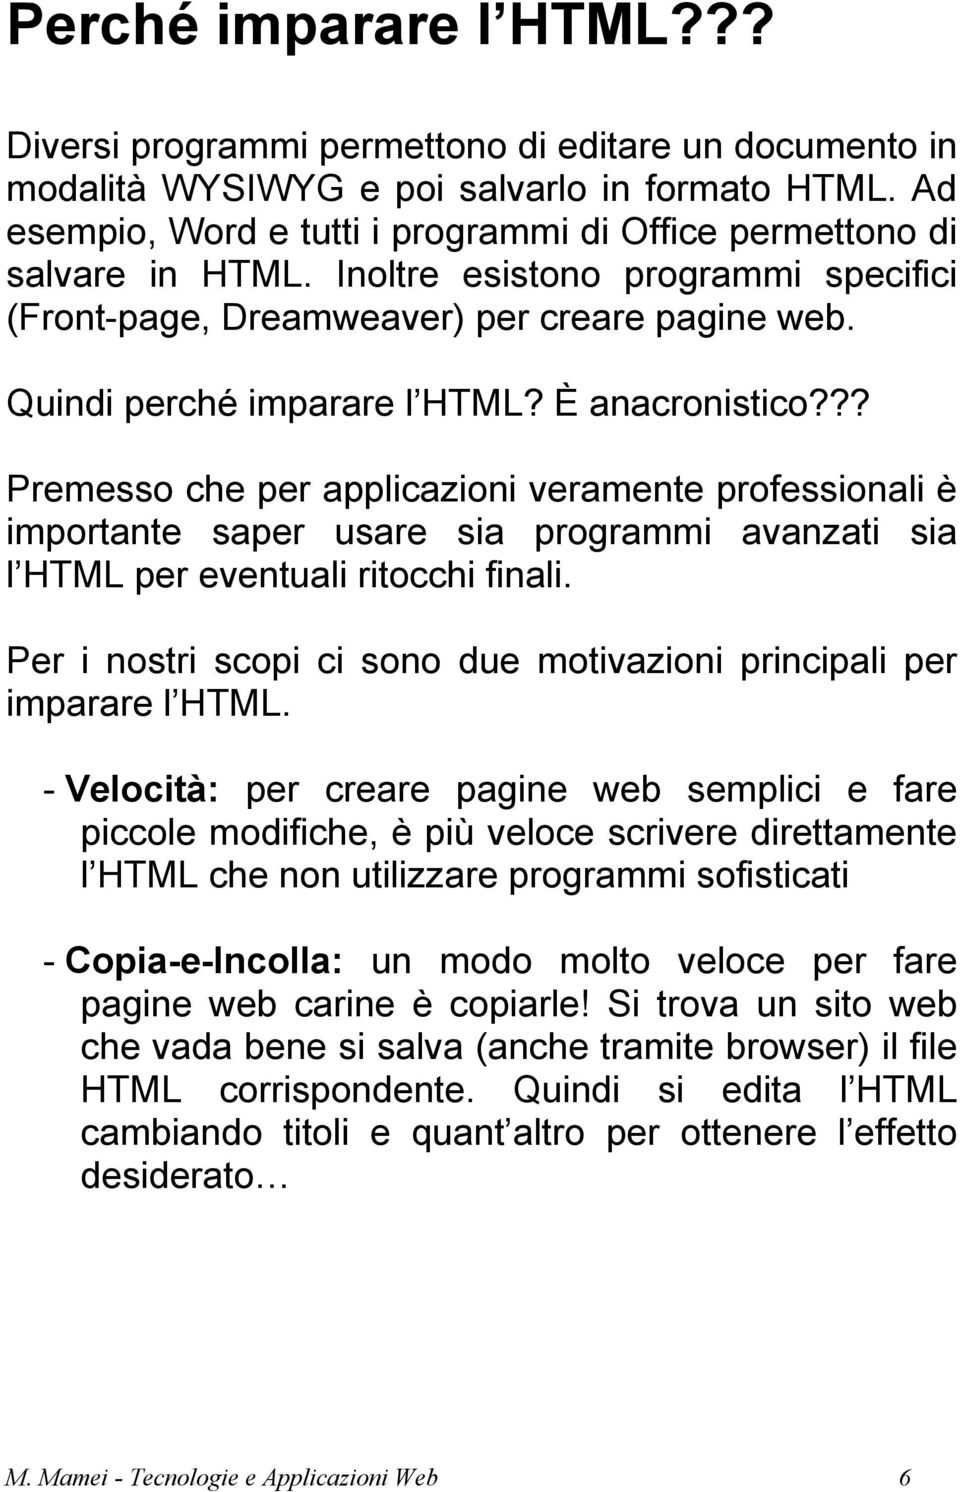 È anacronistico??? Premesso che per applicazioni veramente professionali è importante saper usare sia programmi avanzati sia l HTML per eventuali ritocchi finali.